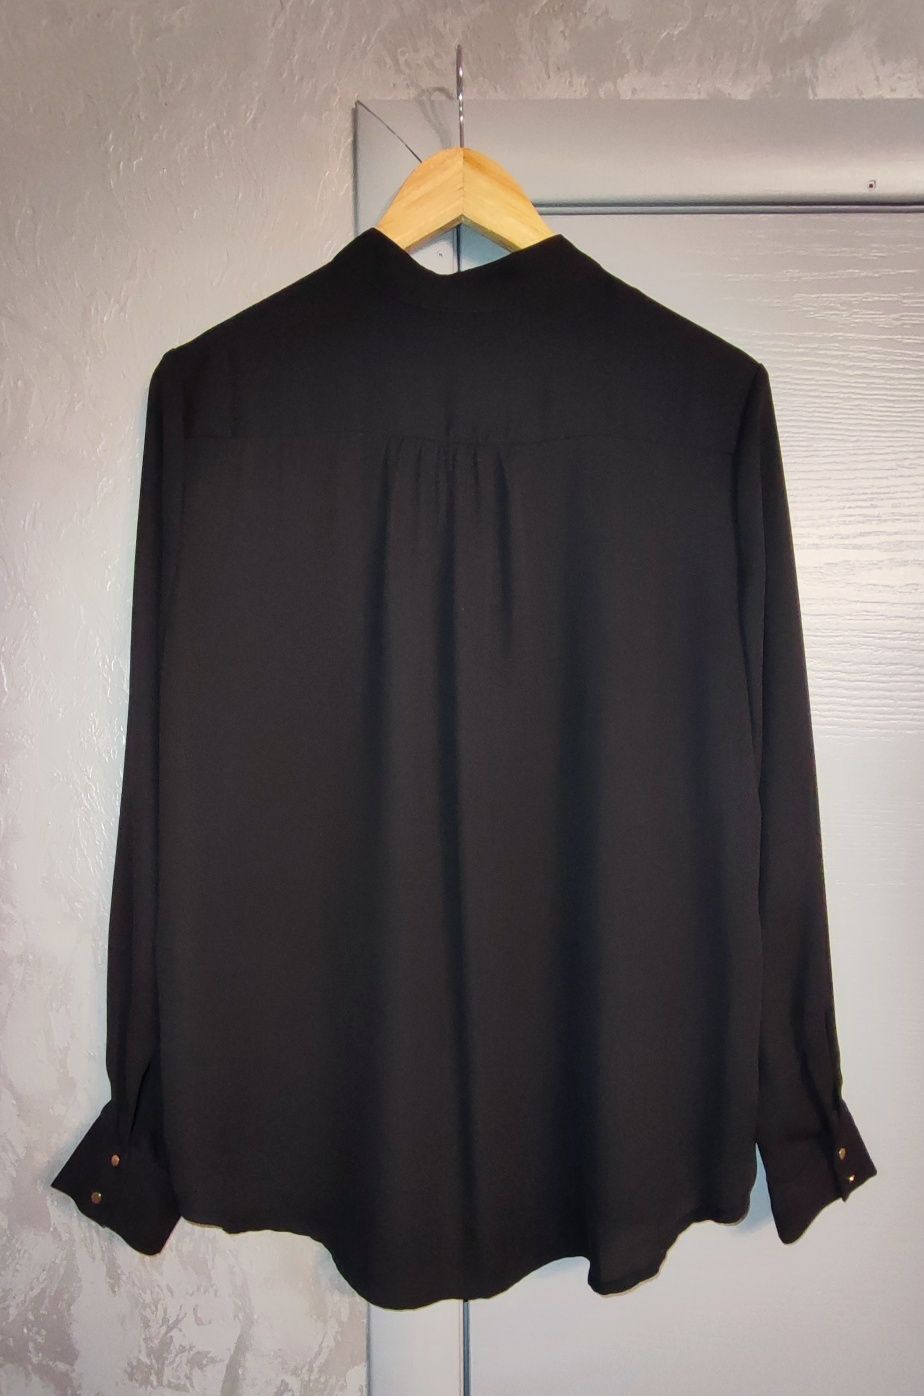 Рубашка сорочка Sinsay кофта Mohito блуза Oodji кардиган